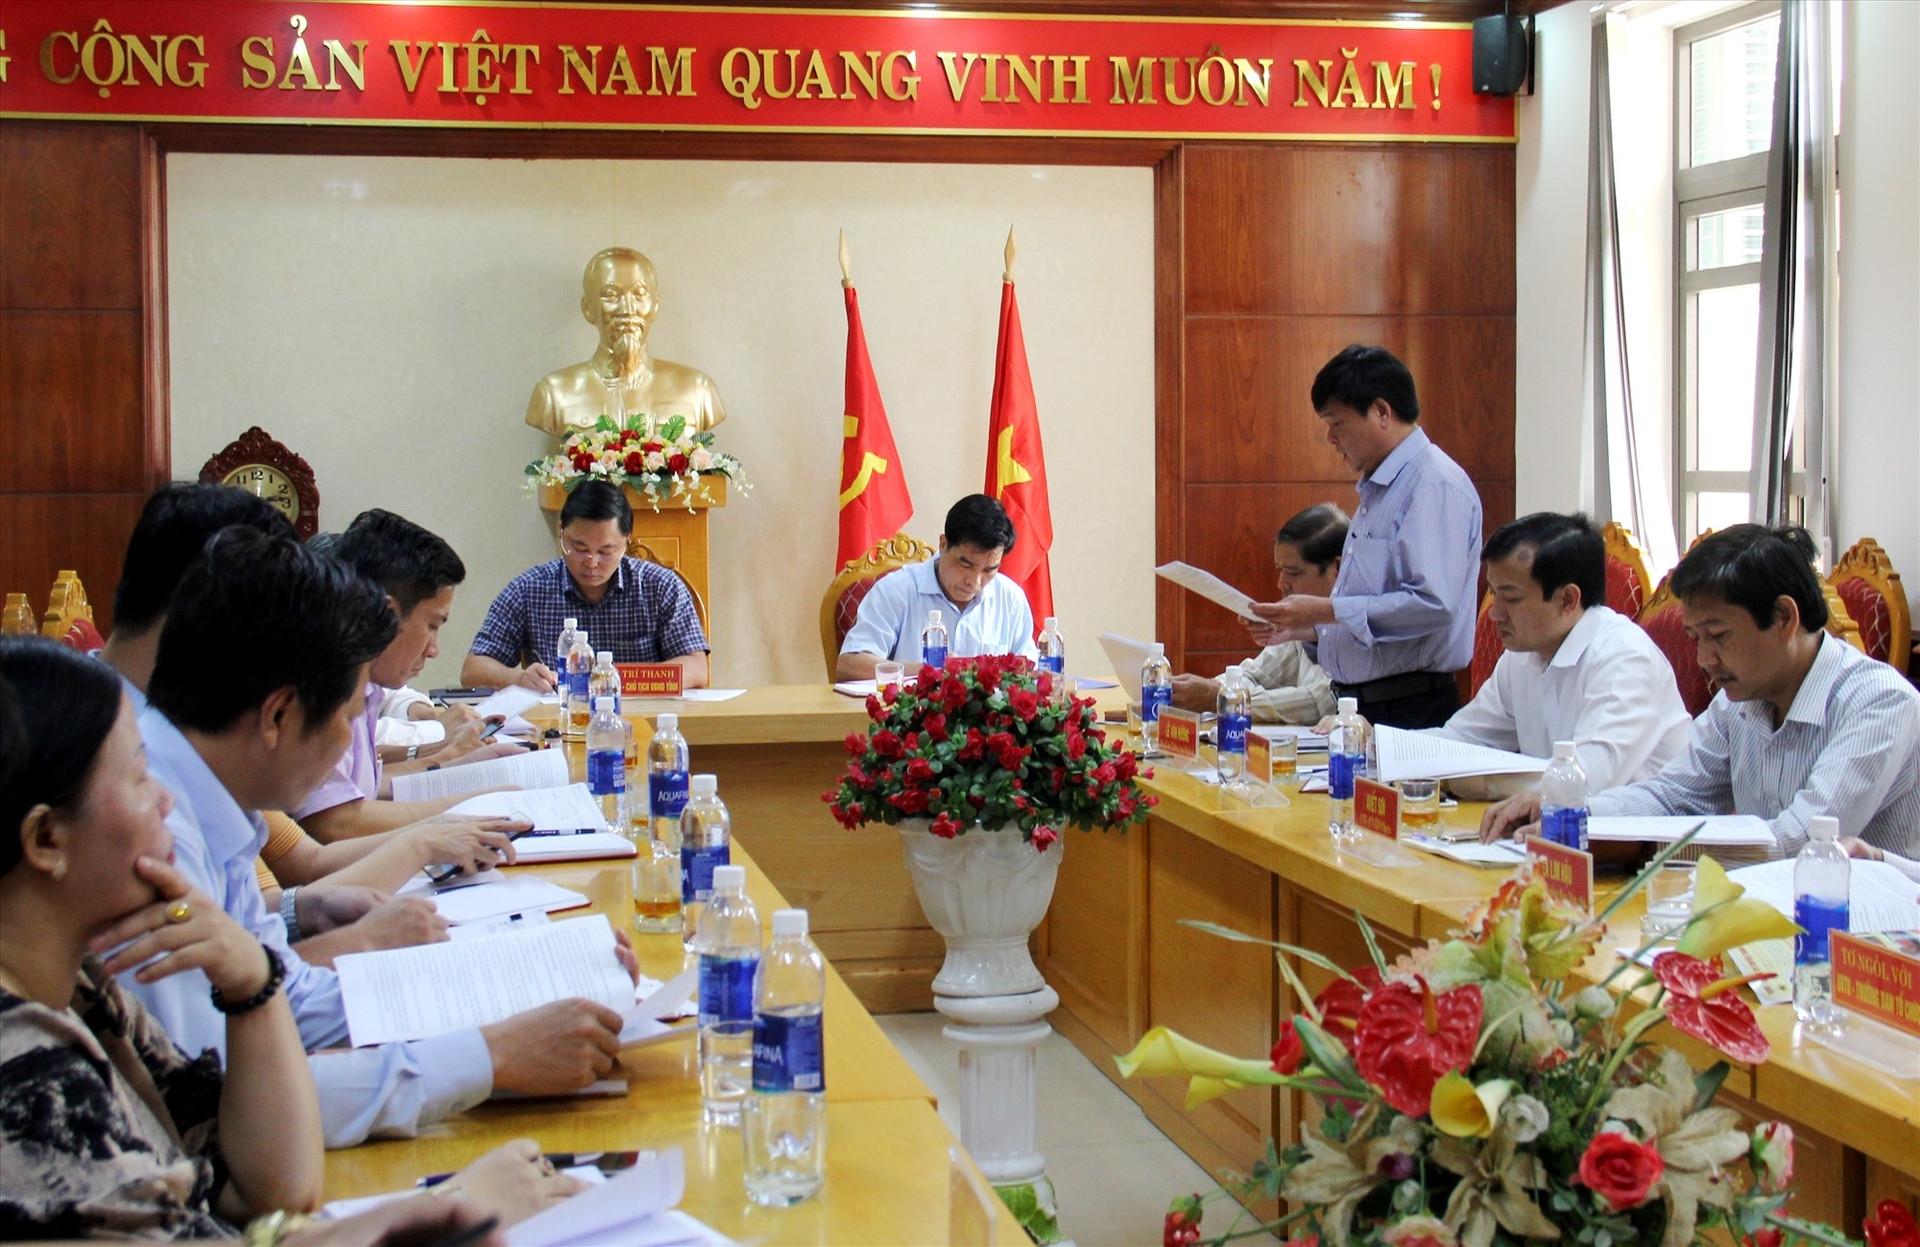 Đại diện lãnh đạo huyện Nam Giang báo cáo kết quả công tác chuẩn bị tổ chức Đại hội Đảng bộ huyện lần thứ XX, nhiệm kỳ 2020 - 2025. Ảnh: A.N